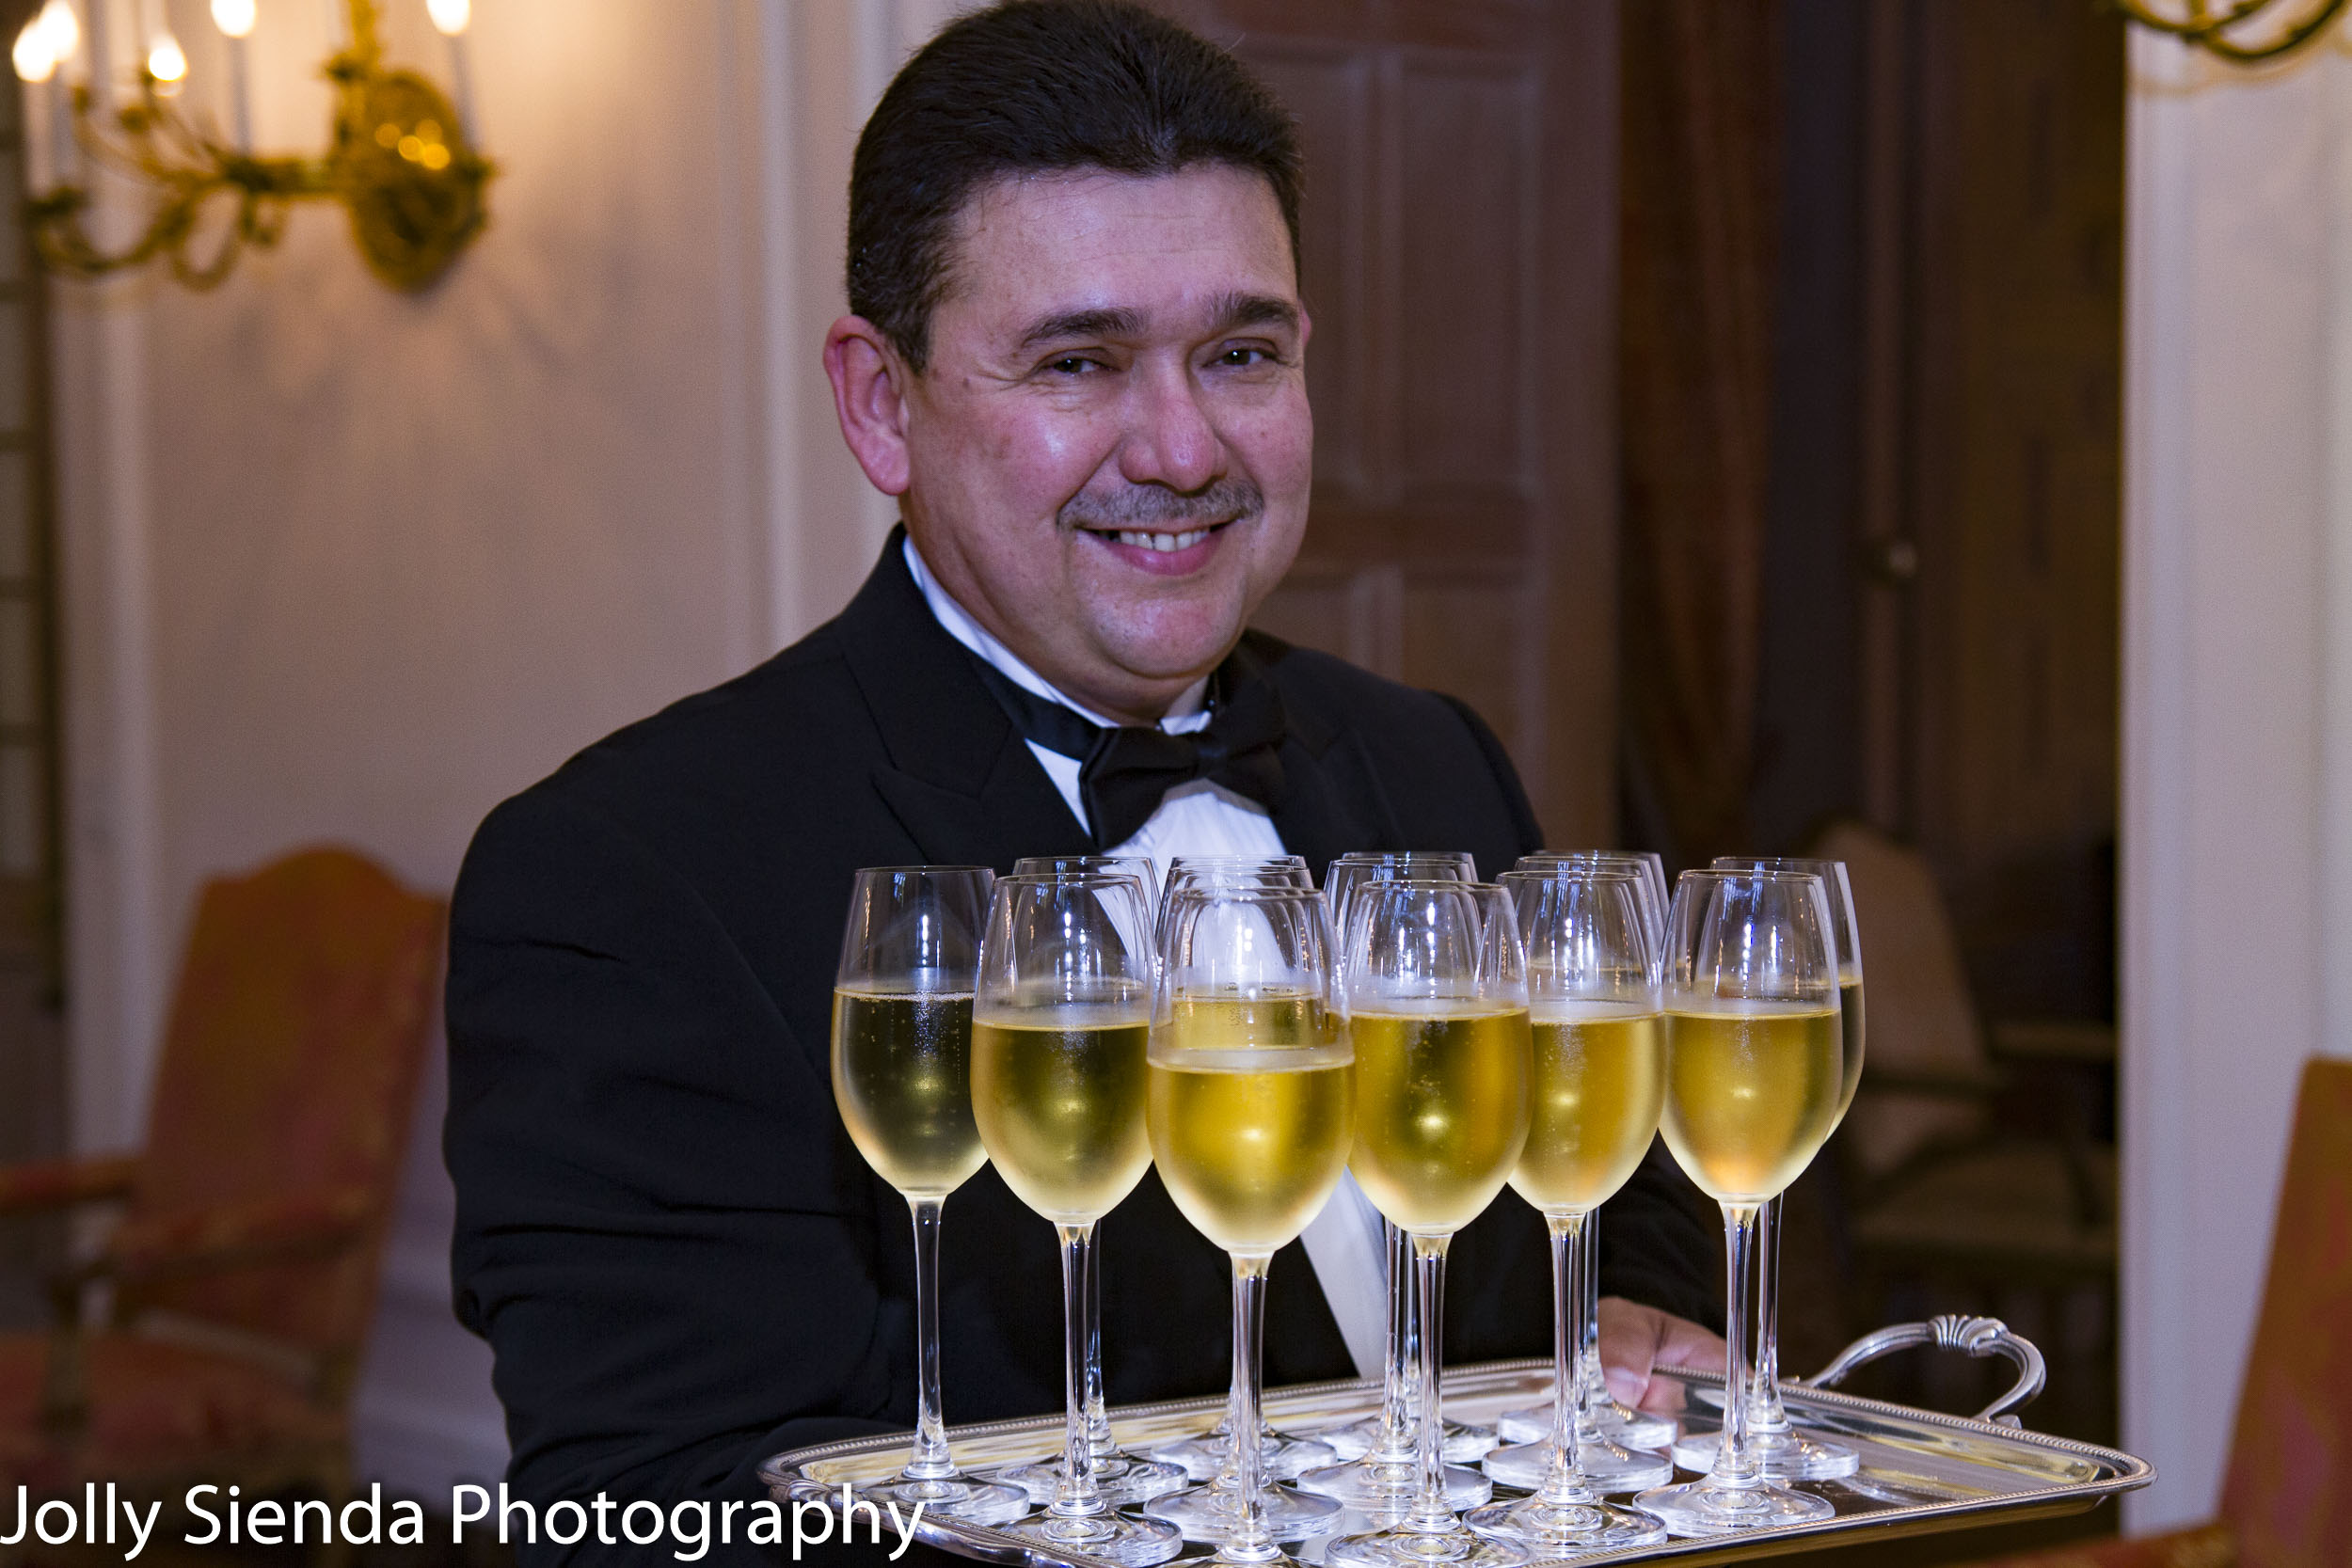 Smiling waiter carries wine glasses, French Ambassadors Dinner